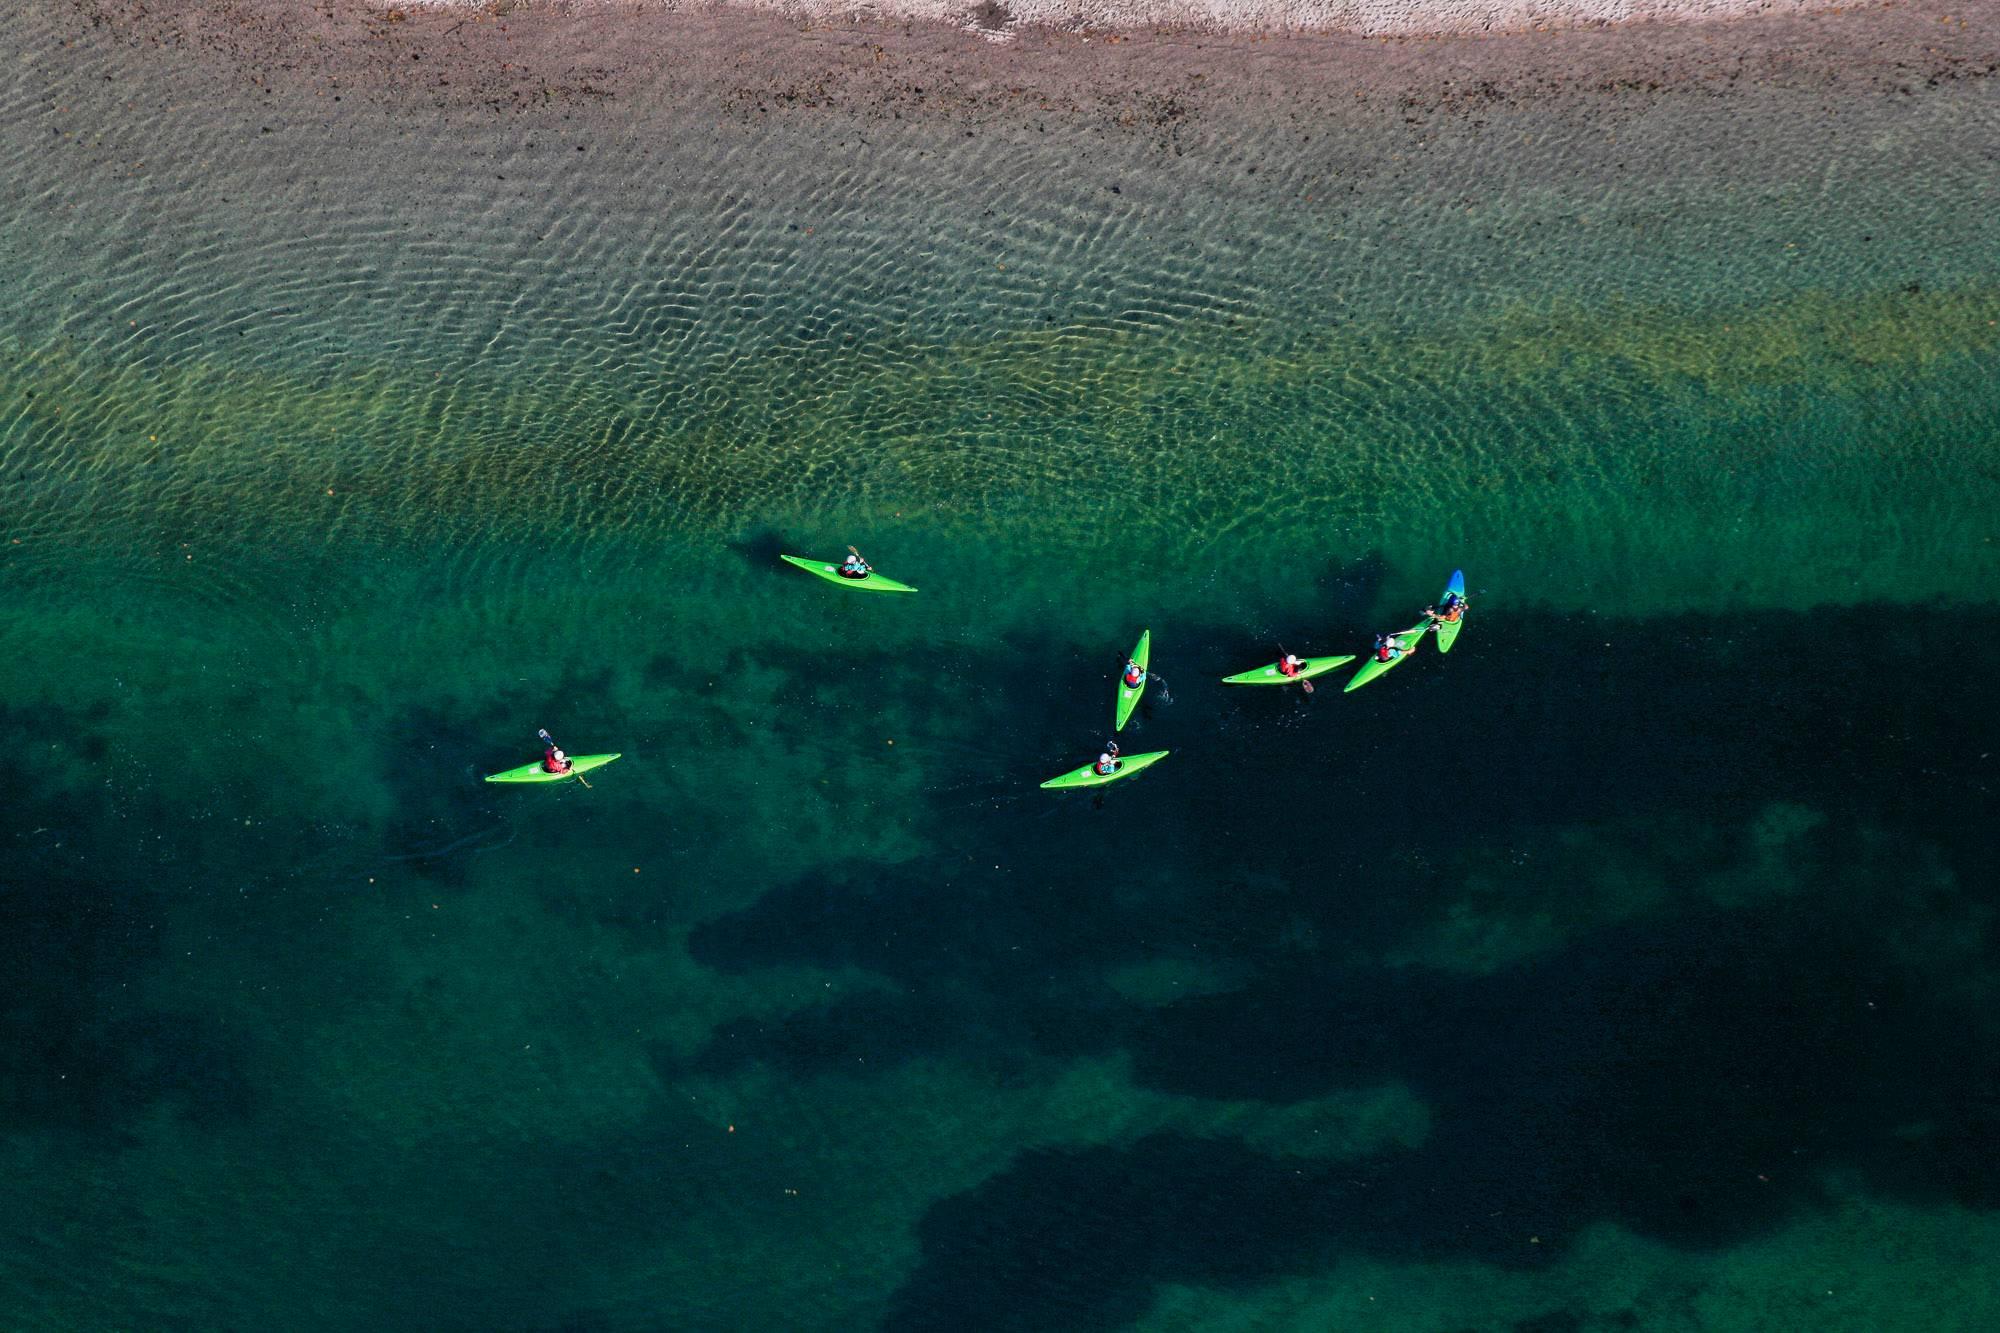 Klaus Leidorf Color Photograph - Green kayaks